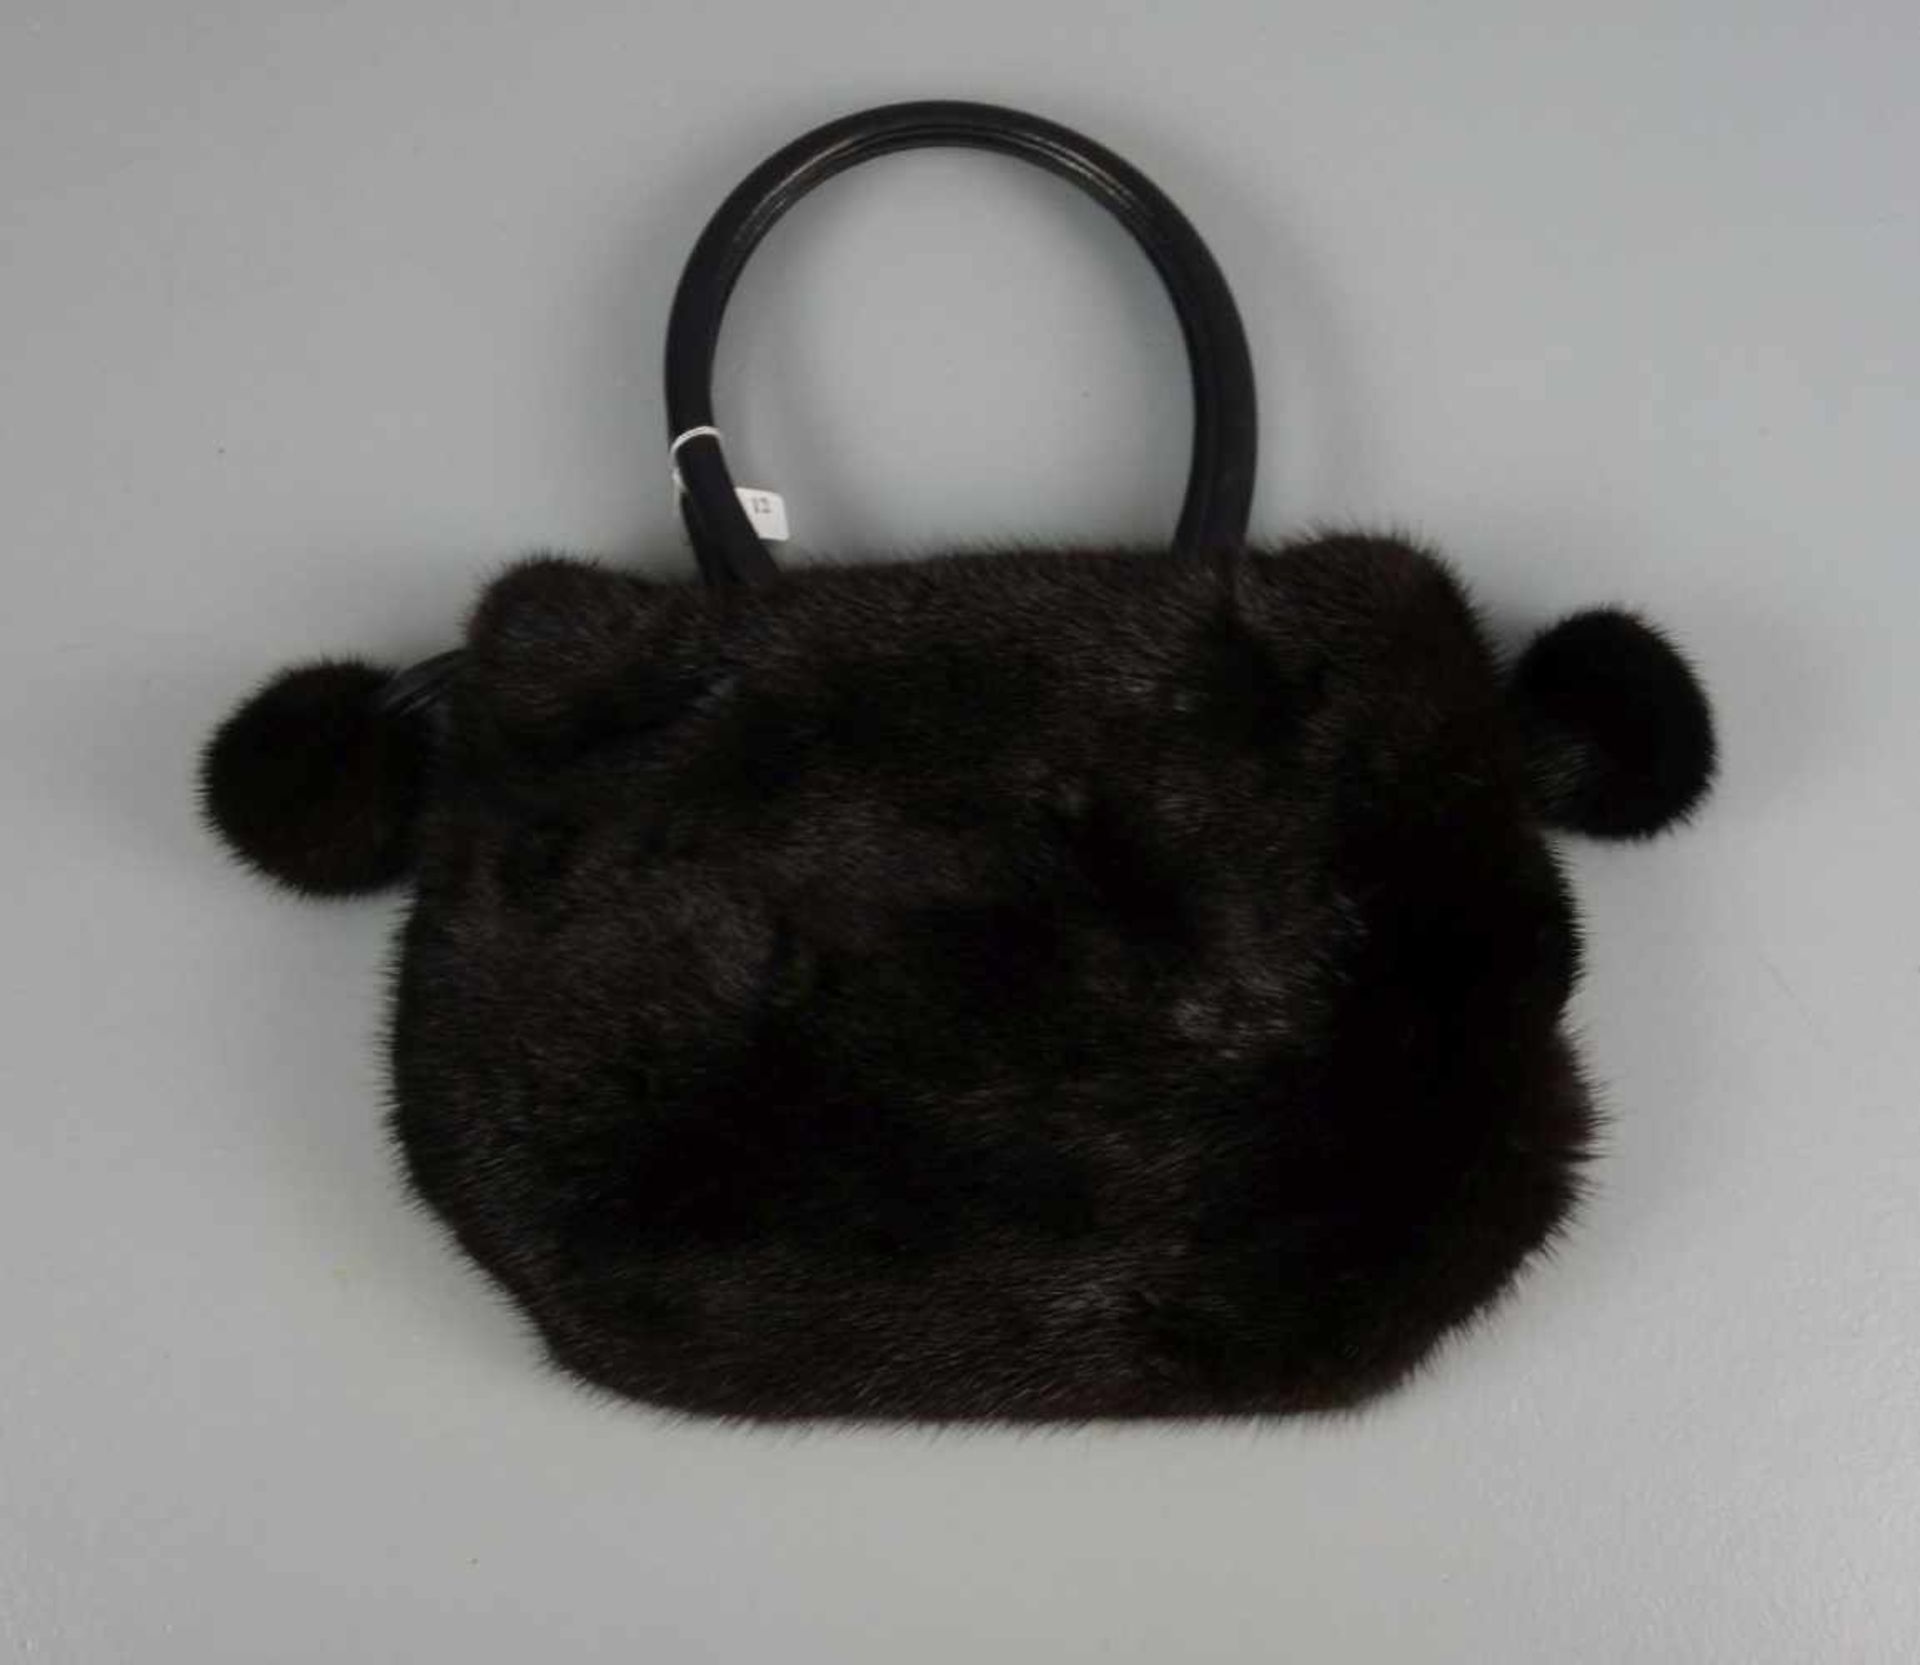 NERZ - HANDTASCHE / mink handbag. Schwarzer, schmalrechteckiger Lederstand, leichte Trapezform, - Bild 2 aus 3